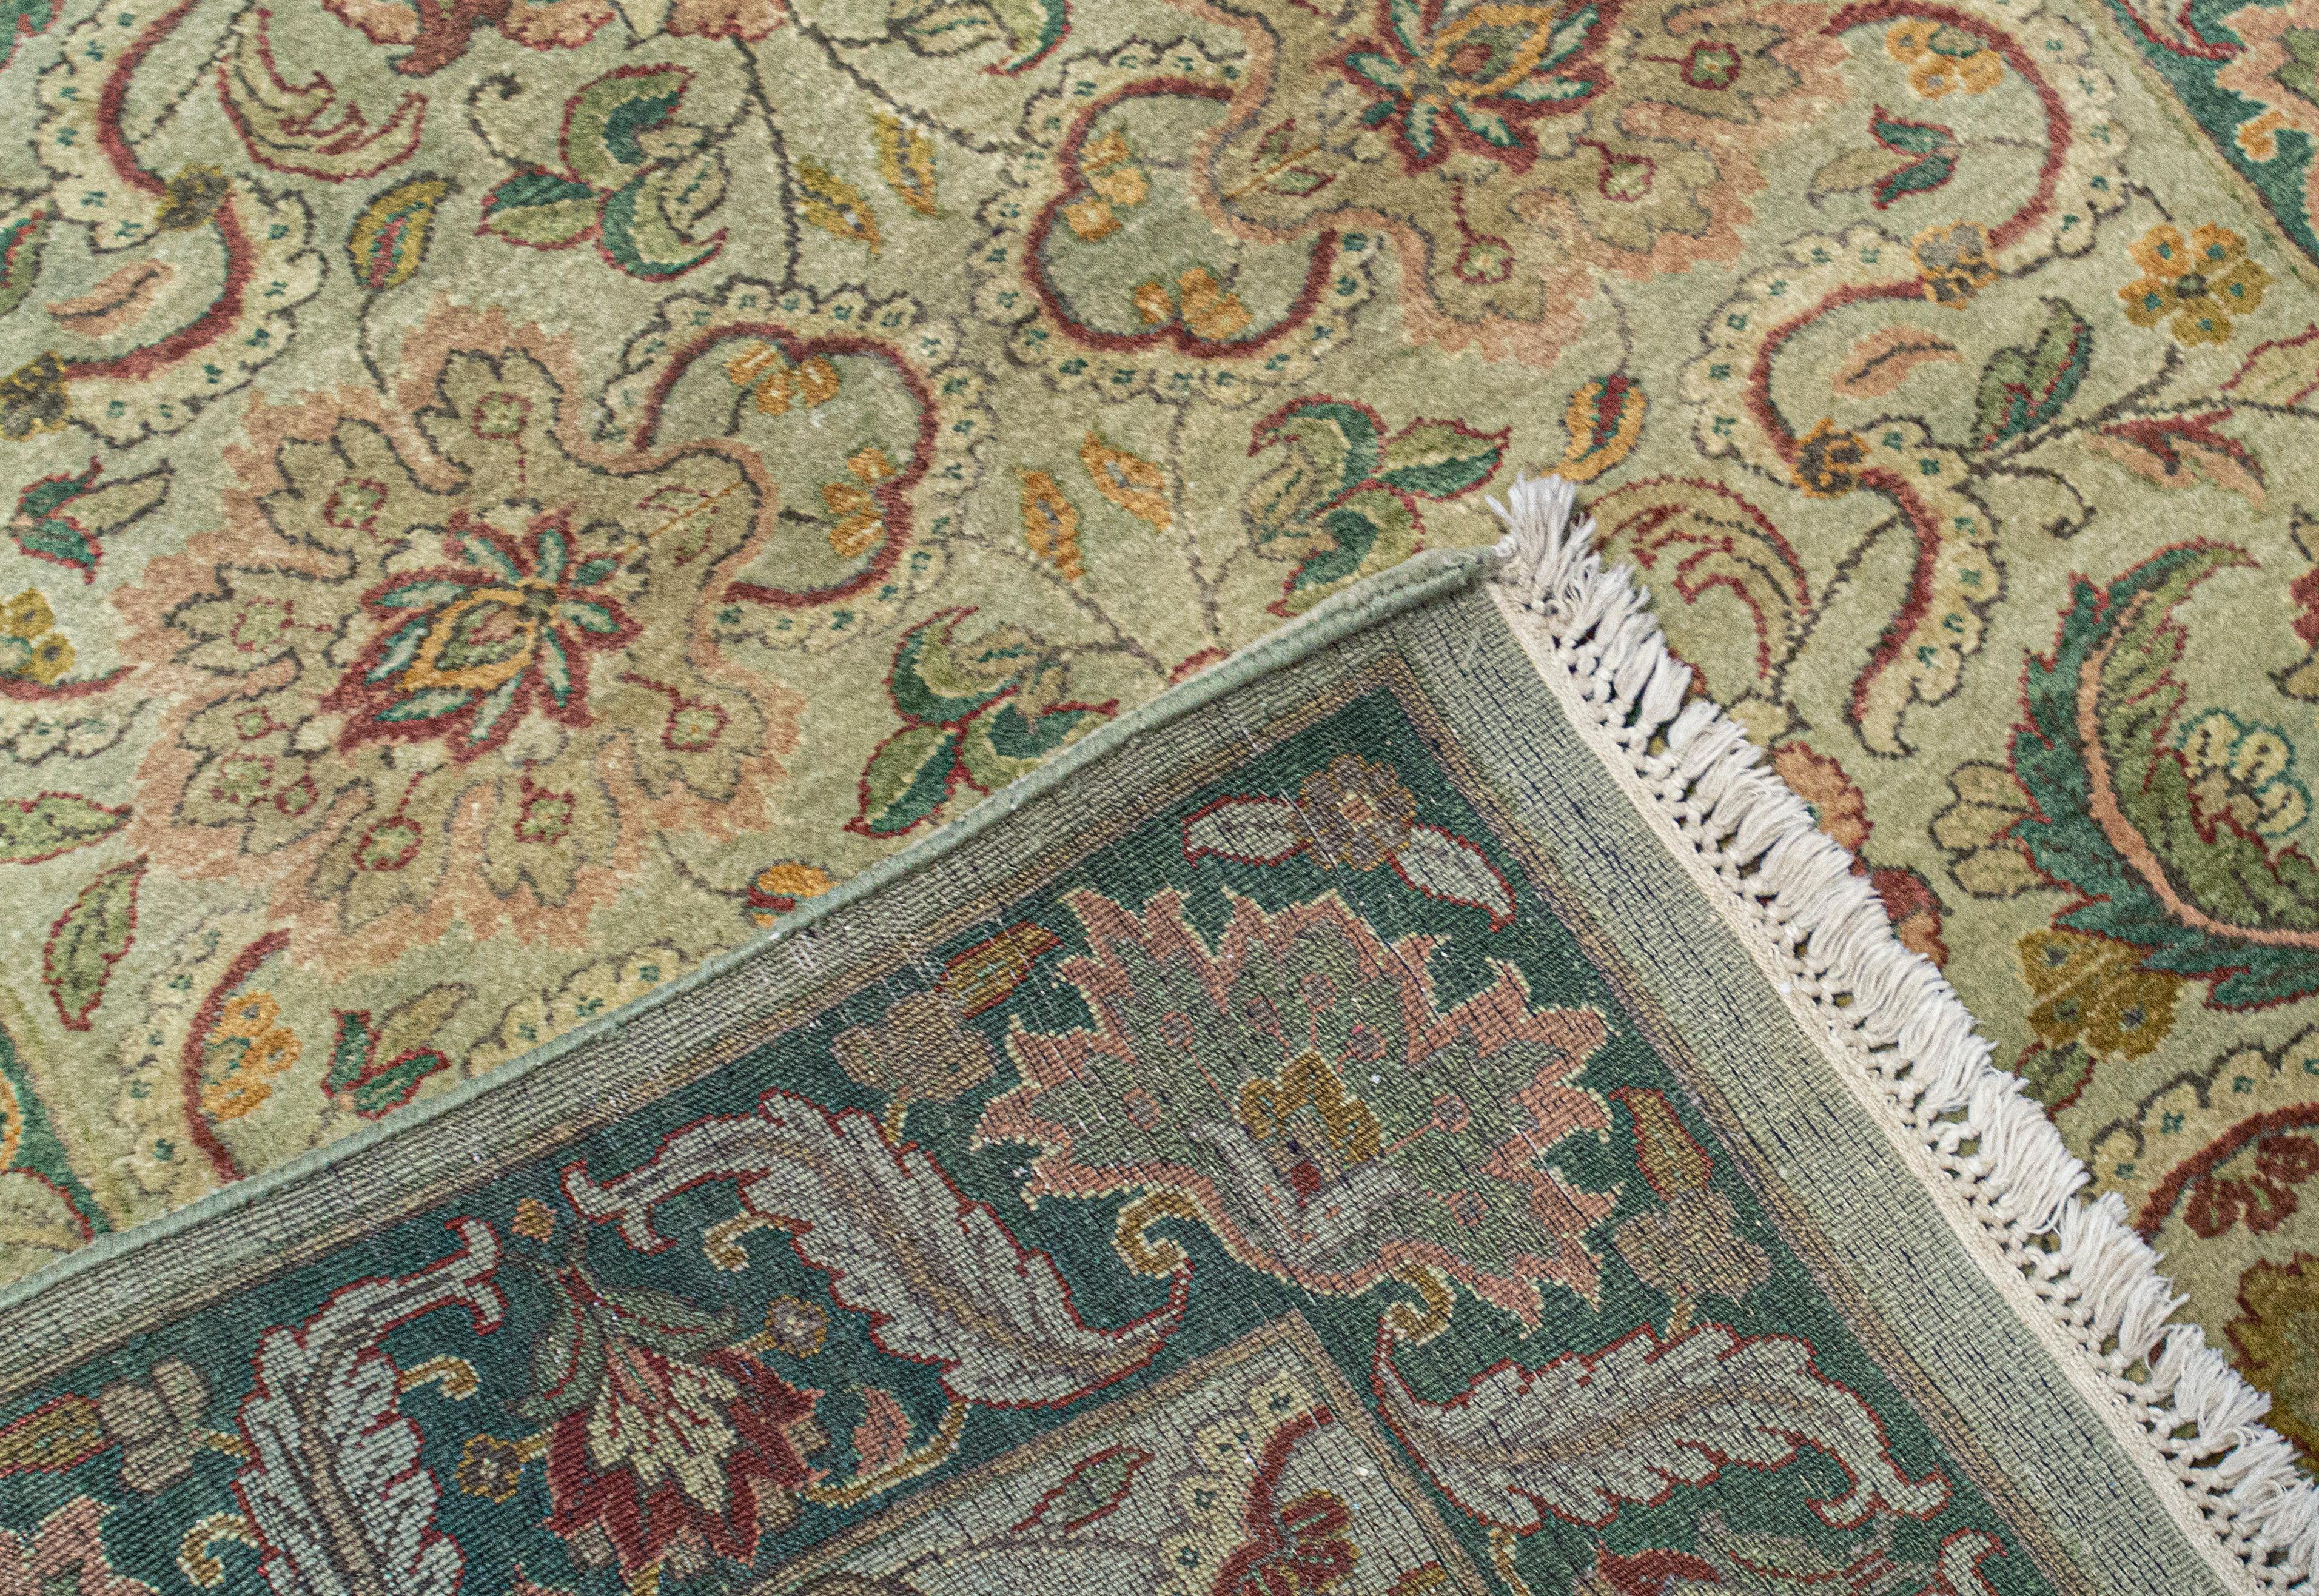 Cet élégant tapis tissé à la main en provenance d'Inde est tissé à partir des laines les plus fines pour créer une pièce douce et luxueuse qui s'adaptera à de nombreux environnements différents. Mesures : 4'3